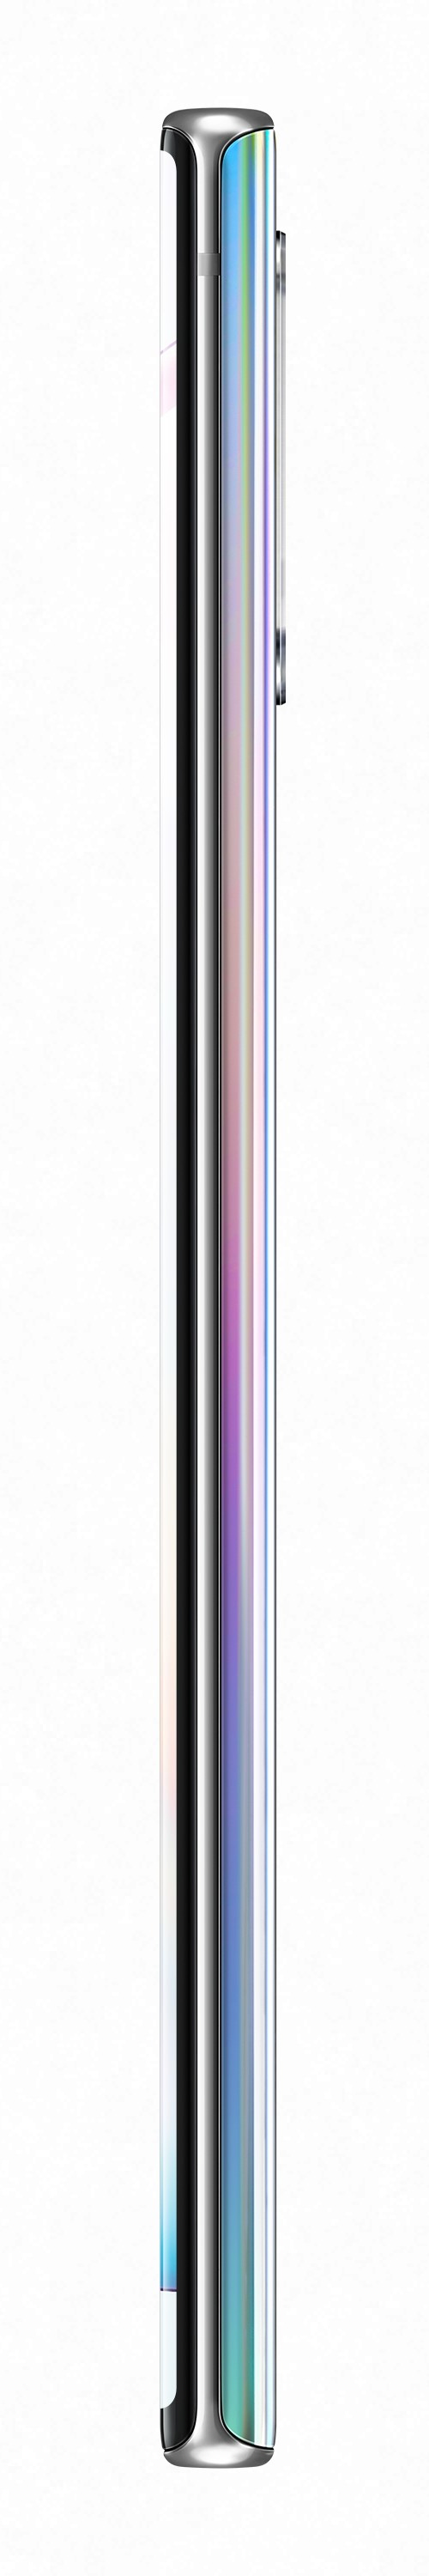 Samsung SM-N975F